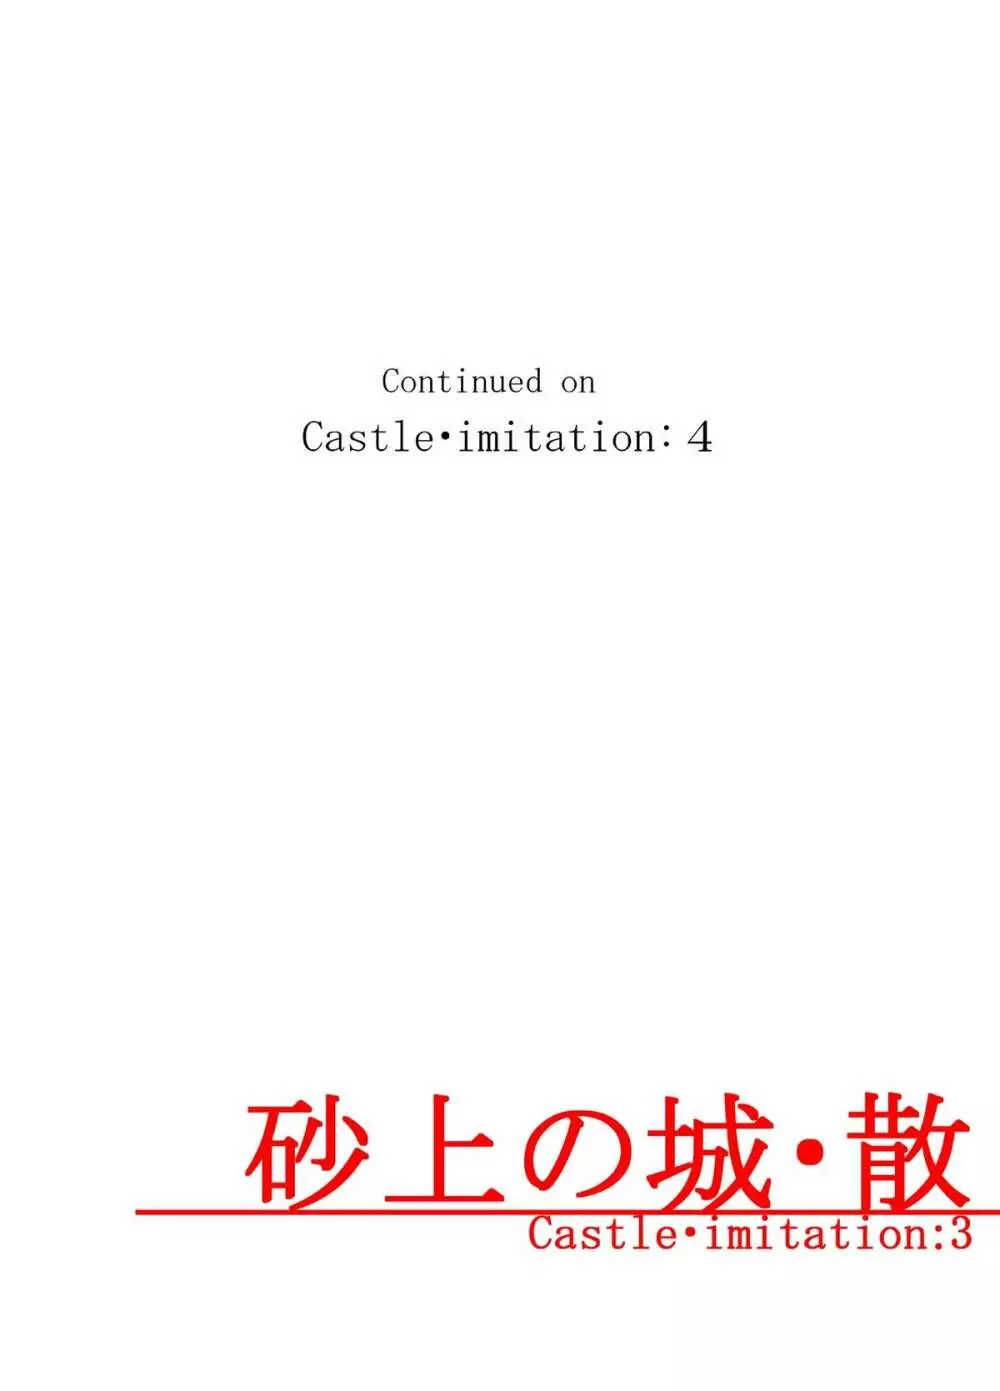 砂上の城・似/Castle・imitation:3 40ページ